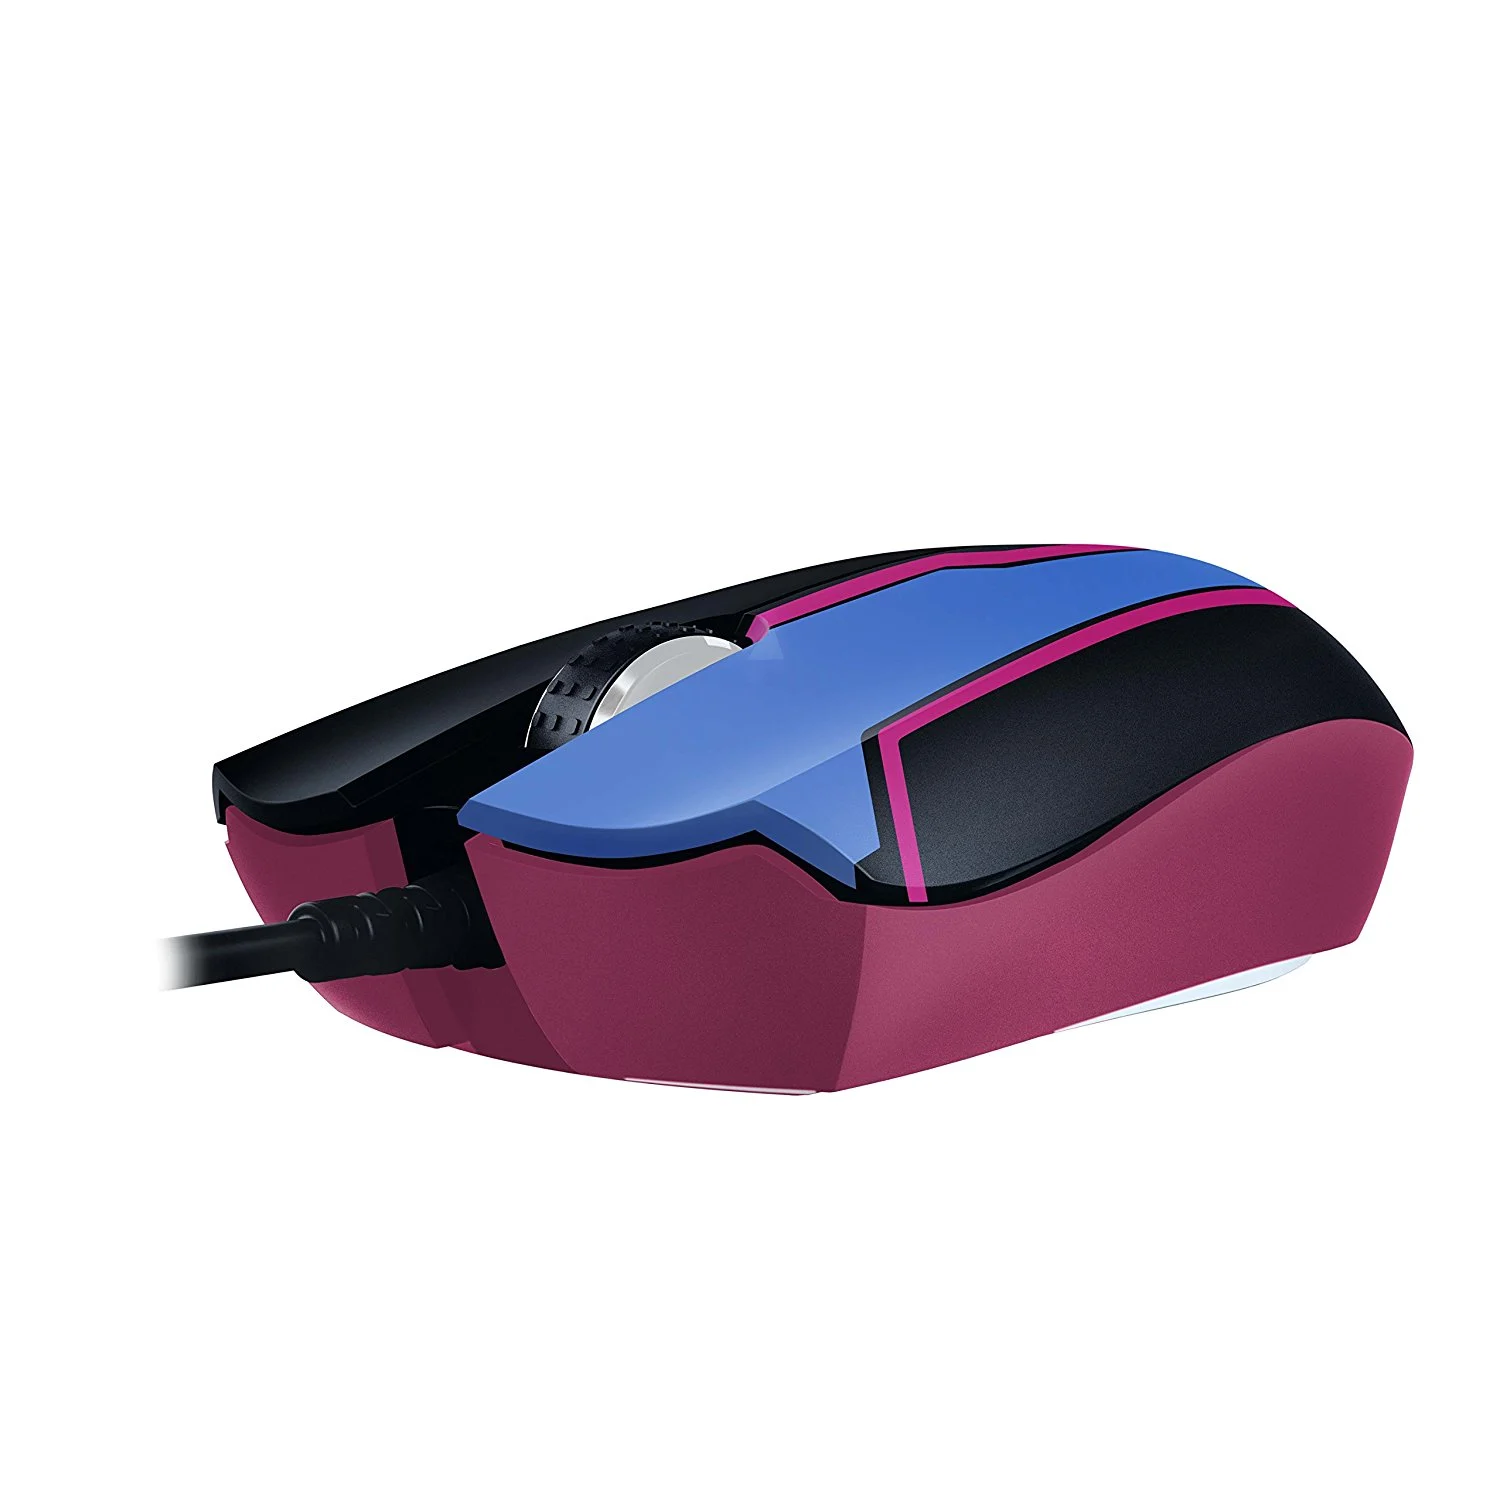 Mouse Razer D.Va Abyssus Elite / 7200DPI - (RZ01-02160200-R3M1)